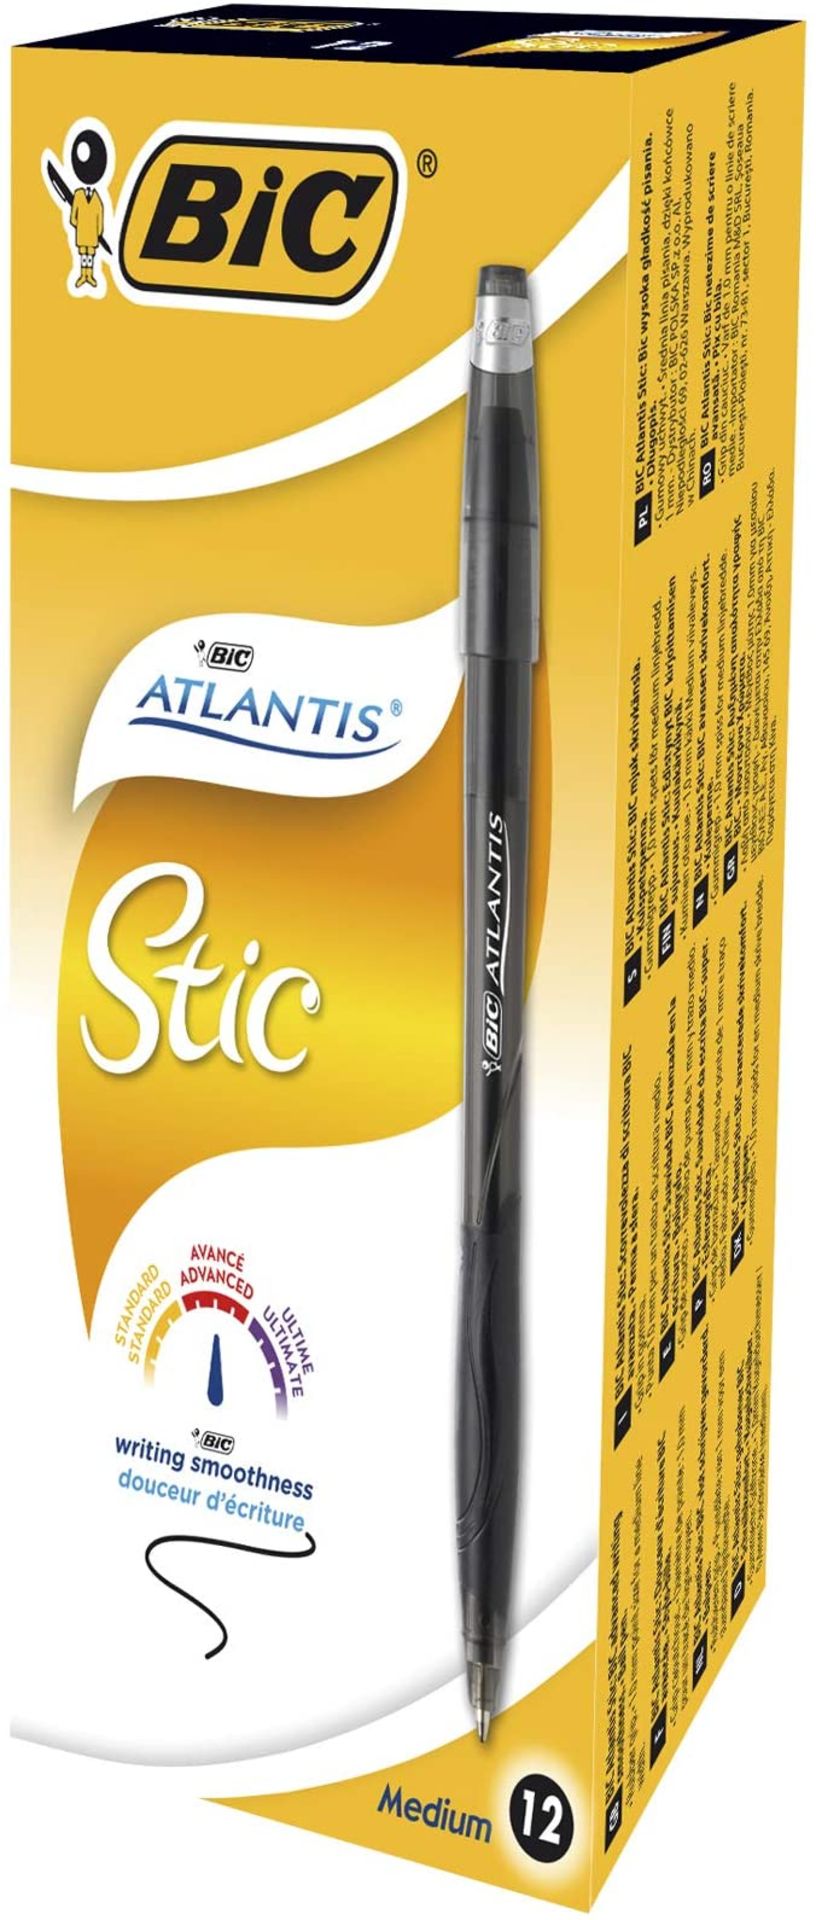 RRP £14.66 - BIC Atlantis Classic Retractable Ball Pens